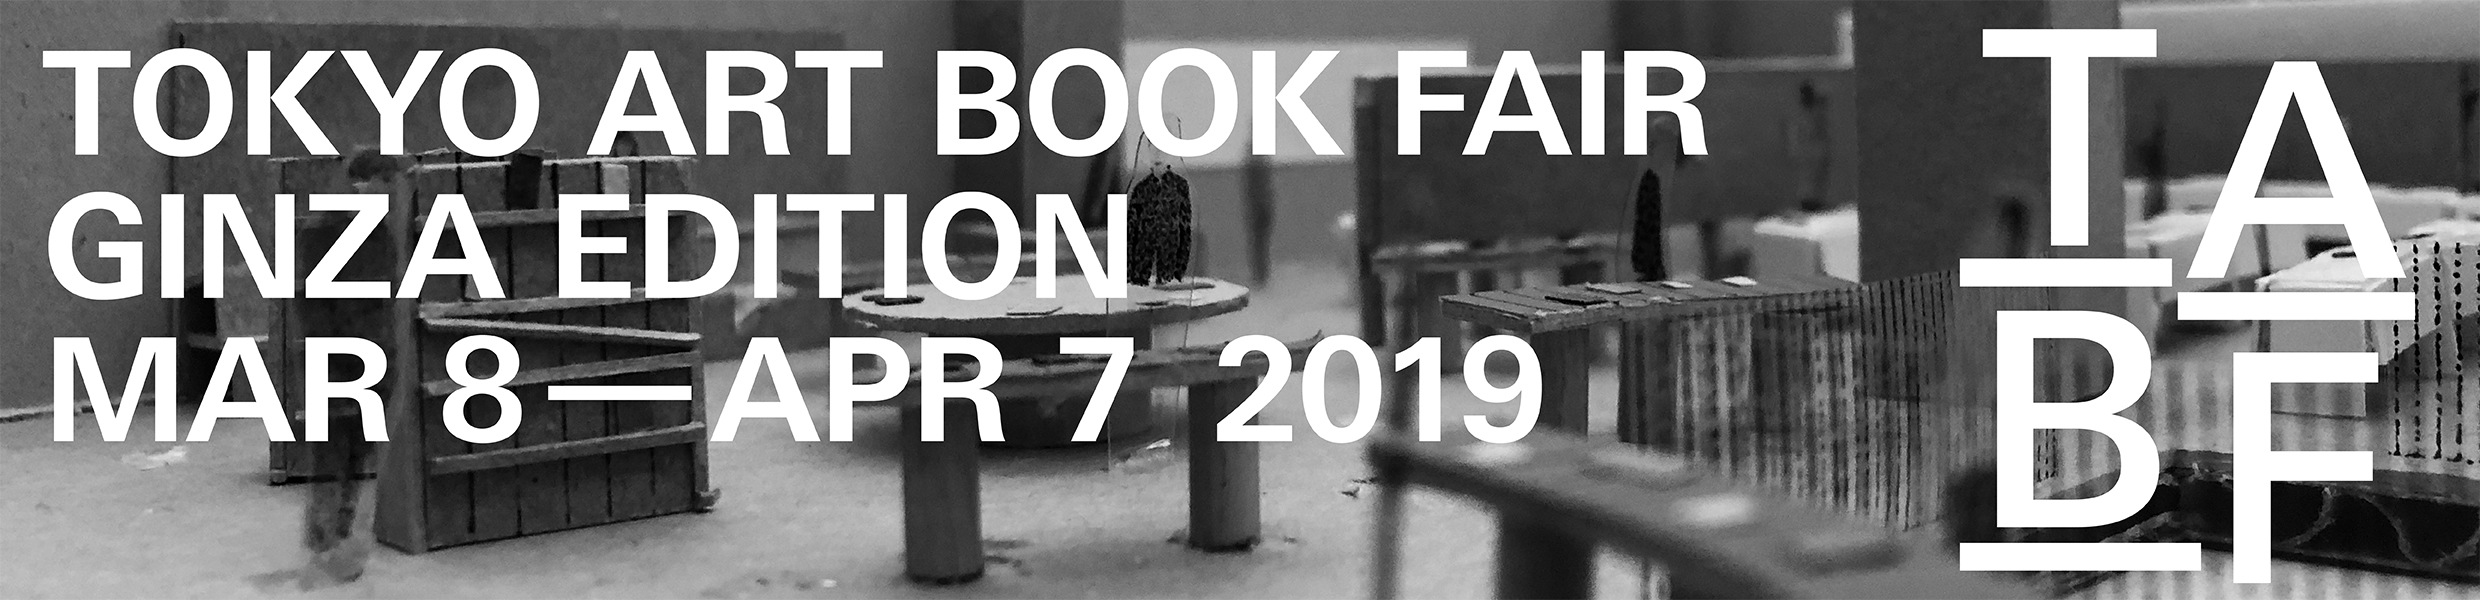 TOKYO ART BOOK FAIR GINZA EDITION MAR 8 - APR 7 2019